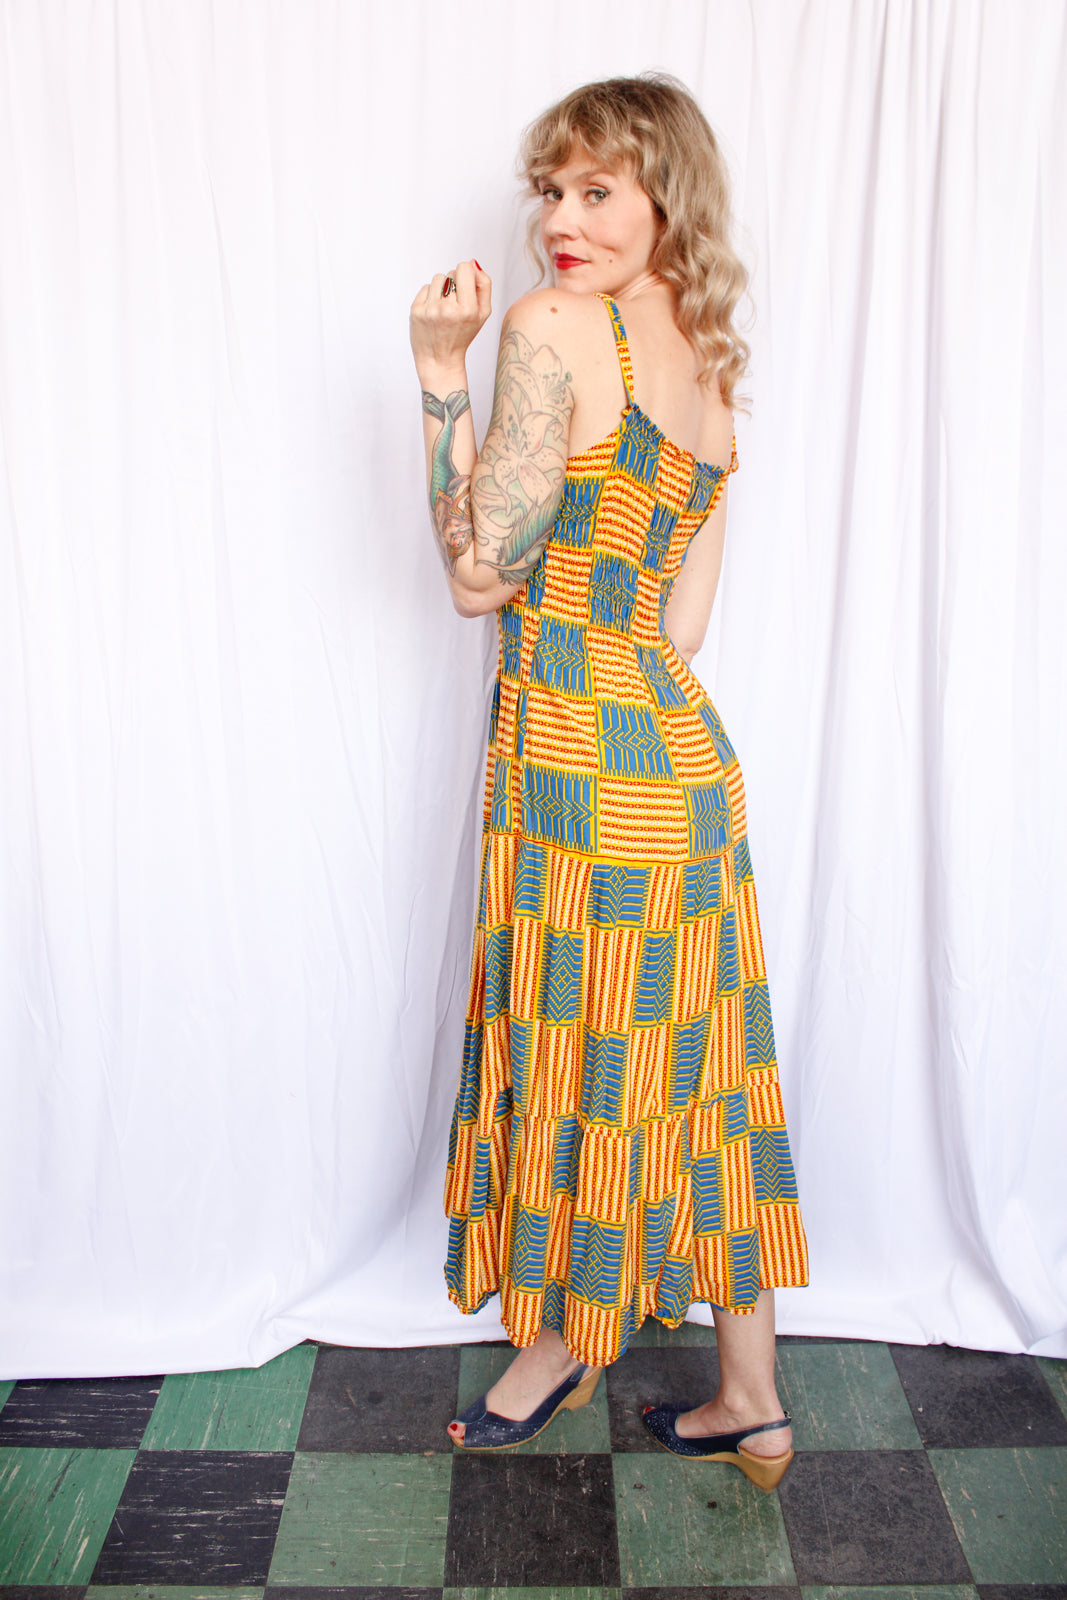 1970s Batik Cotton Summer Dress - Large